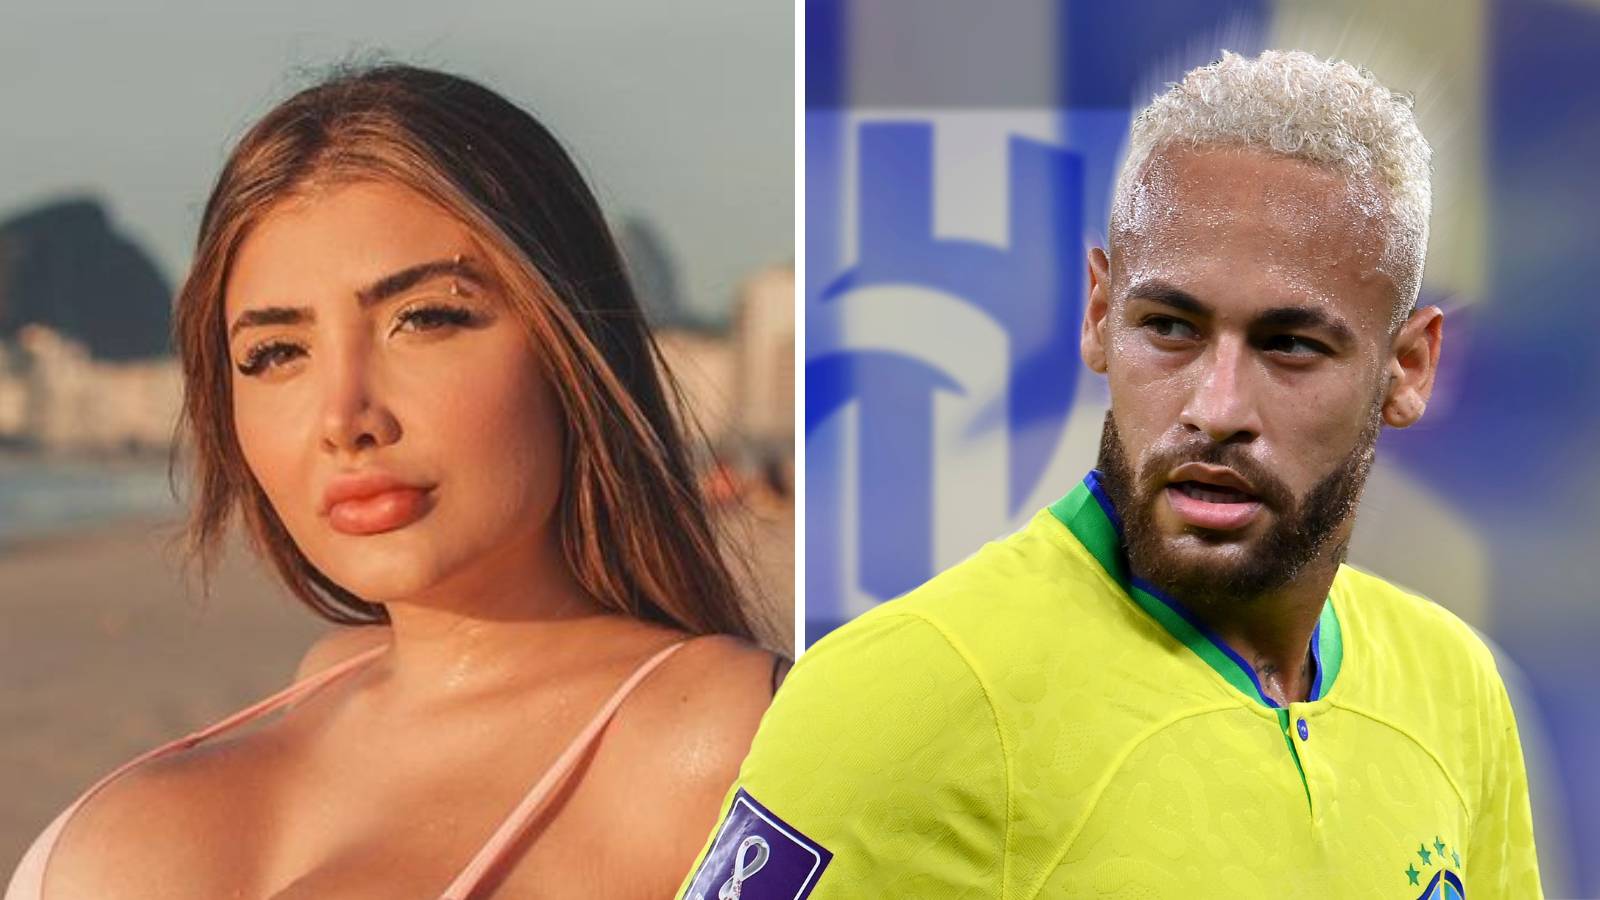 Pustila u javnost sočne poruke Neymara, raspala mu se veza: 'Tražio me golišave fotografije'